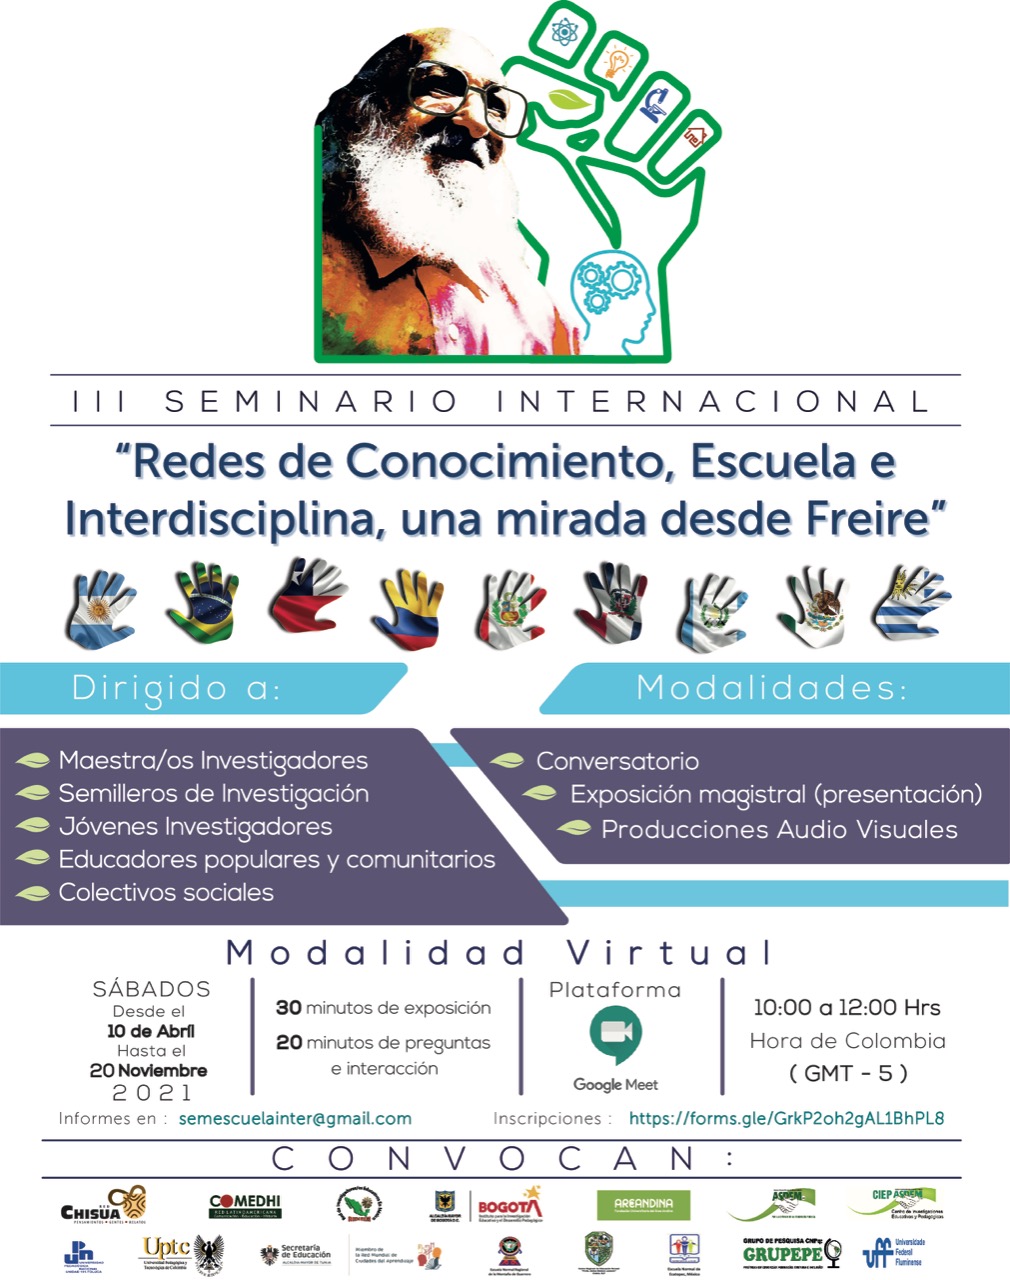 III Seminario Internacional “Redes de Conocimiento, Escuela e interdisciplina, una mirada desde Freire”